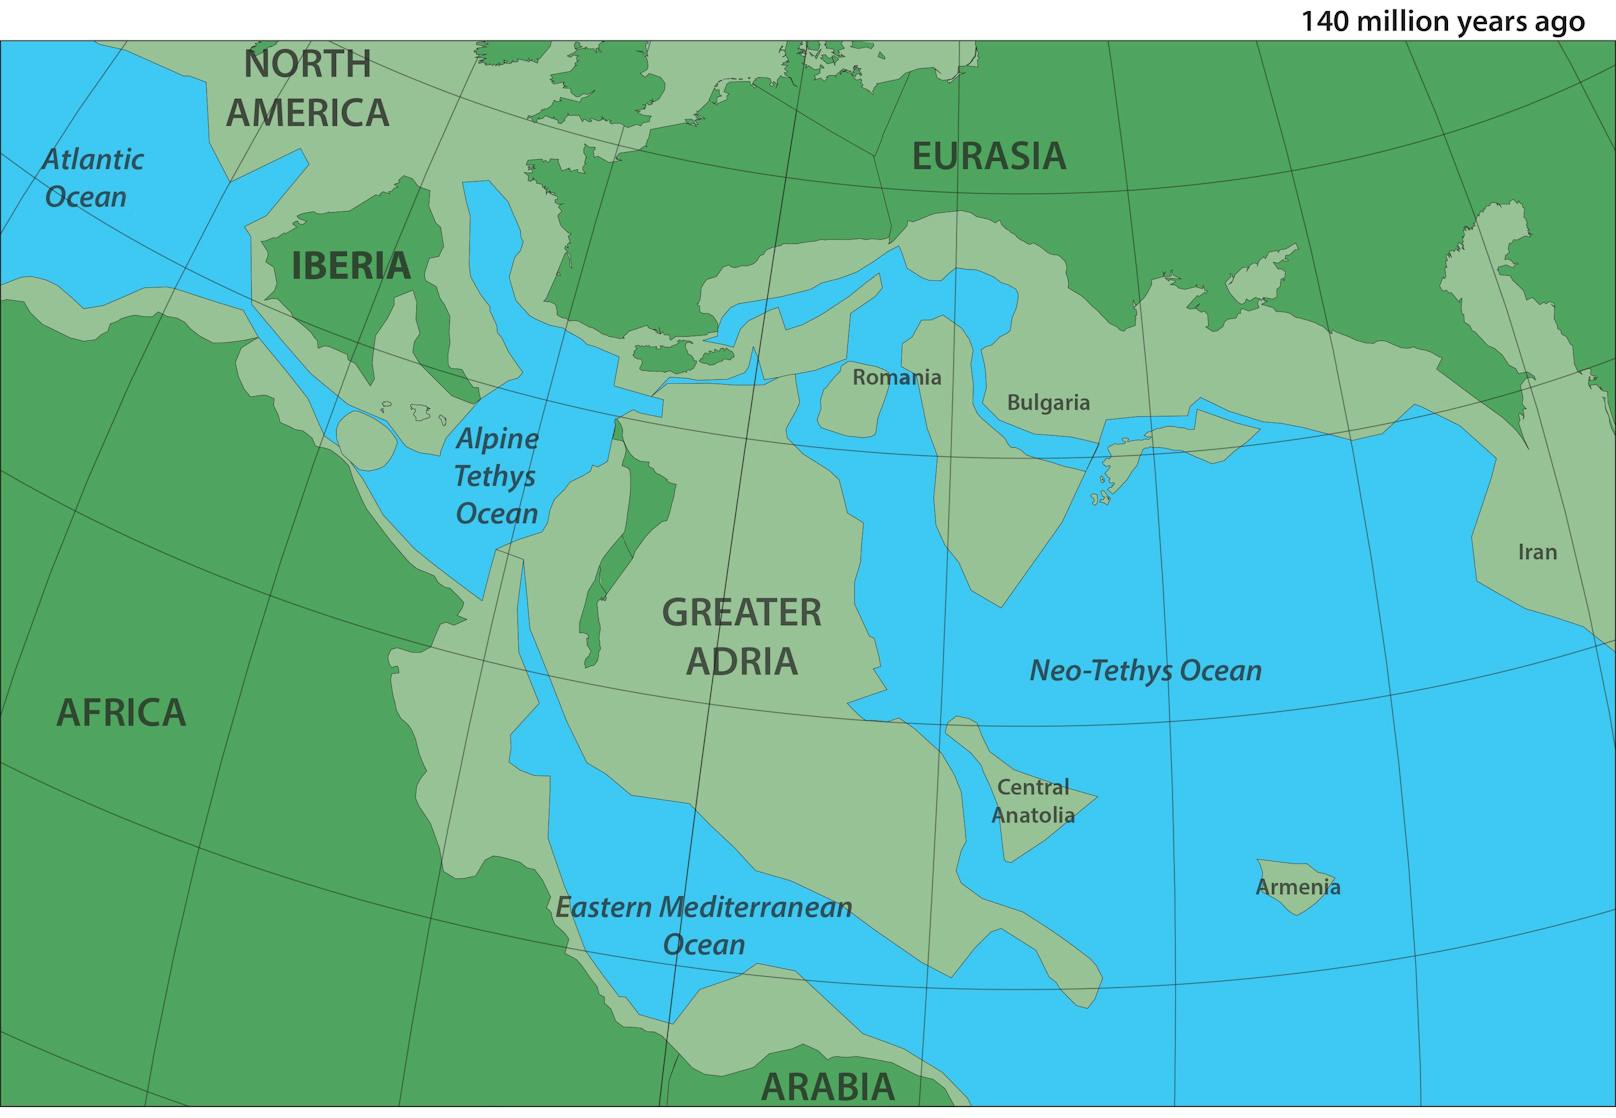 "Greater Adria" war einst Teil von Nordafrika und löste sich vor 200 Millionen Jahren davon ab.